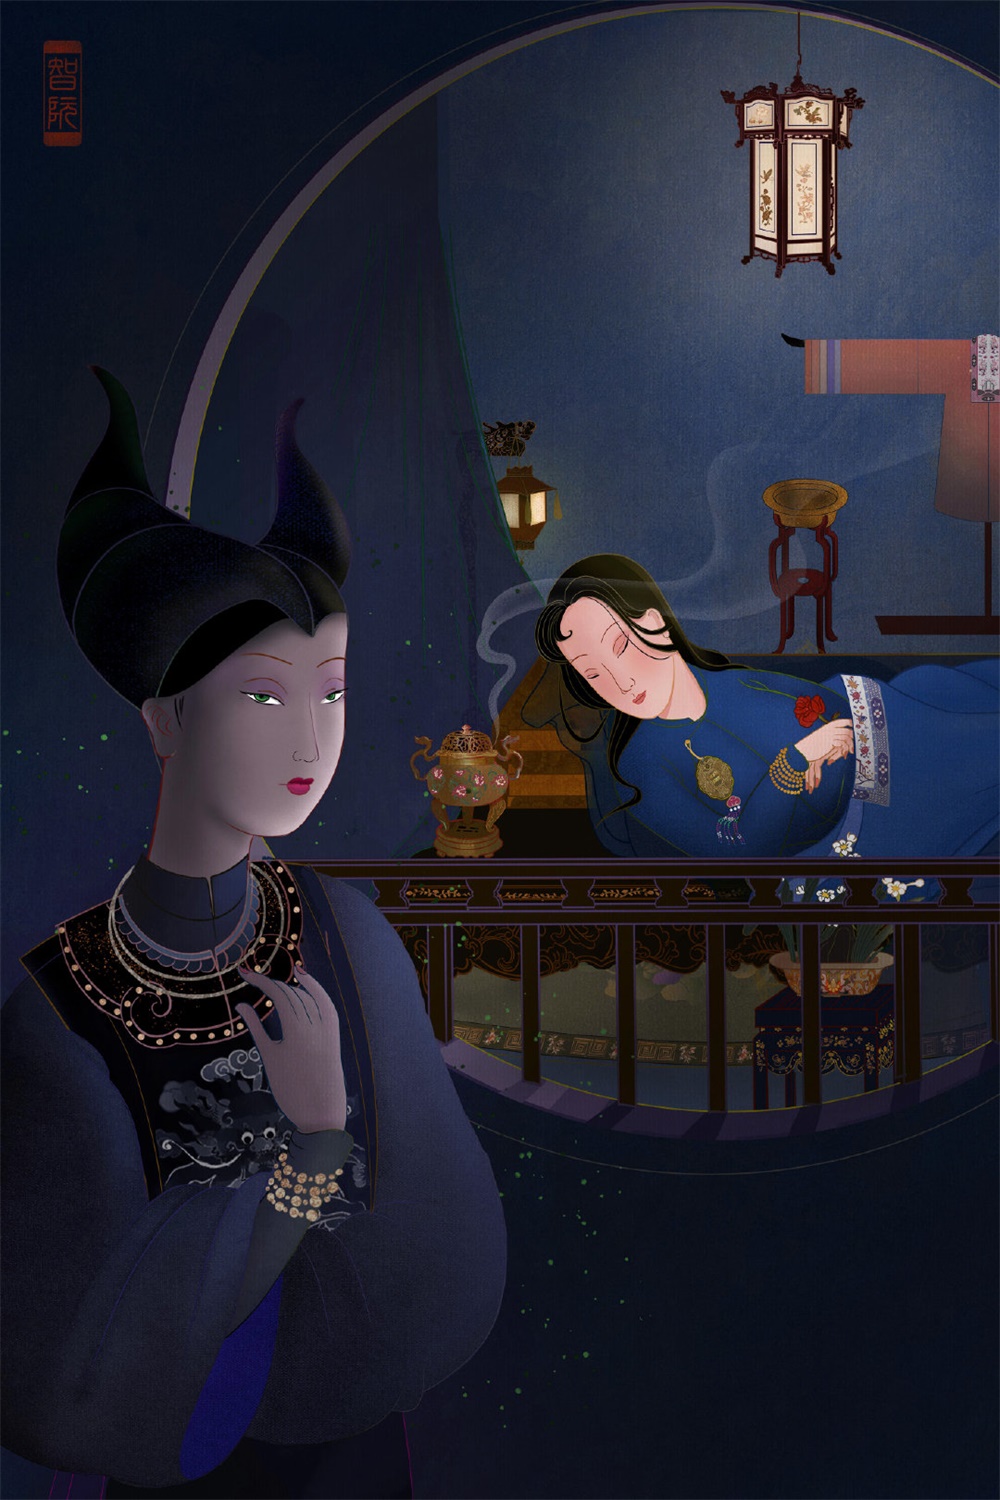 越南版「迪士尼公主与恶棍」主题插画